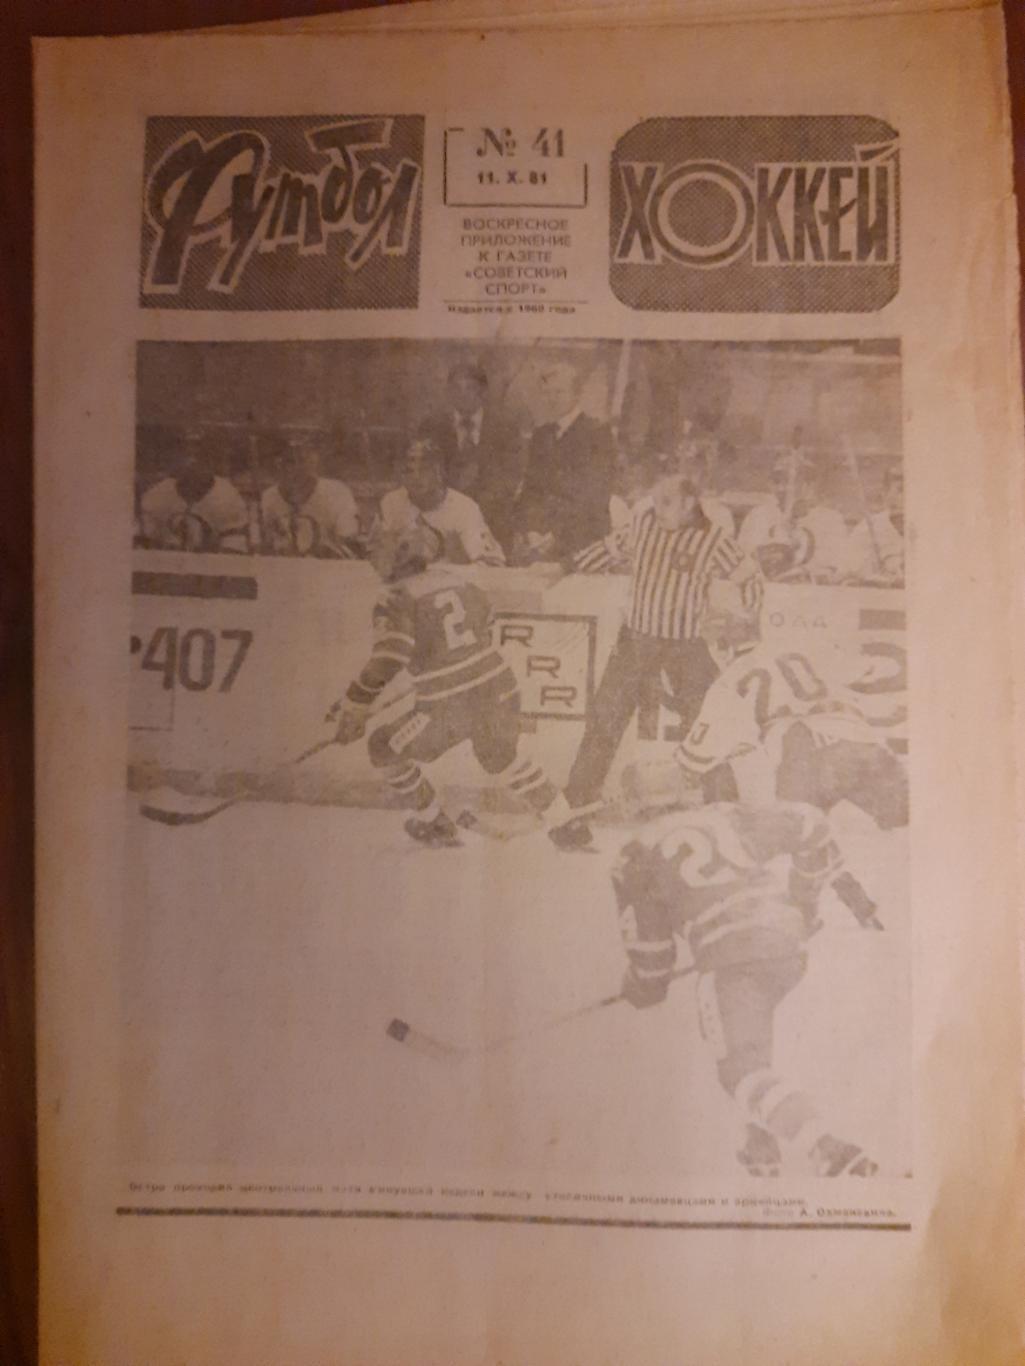 еженедельник футбол-хоккей #41,1981